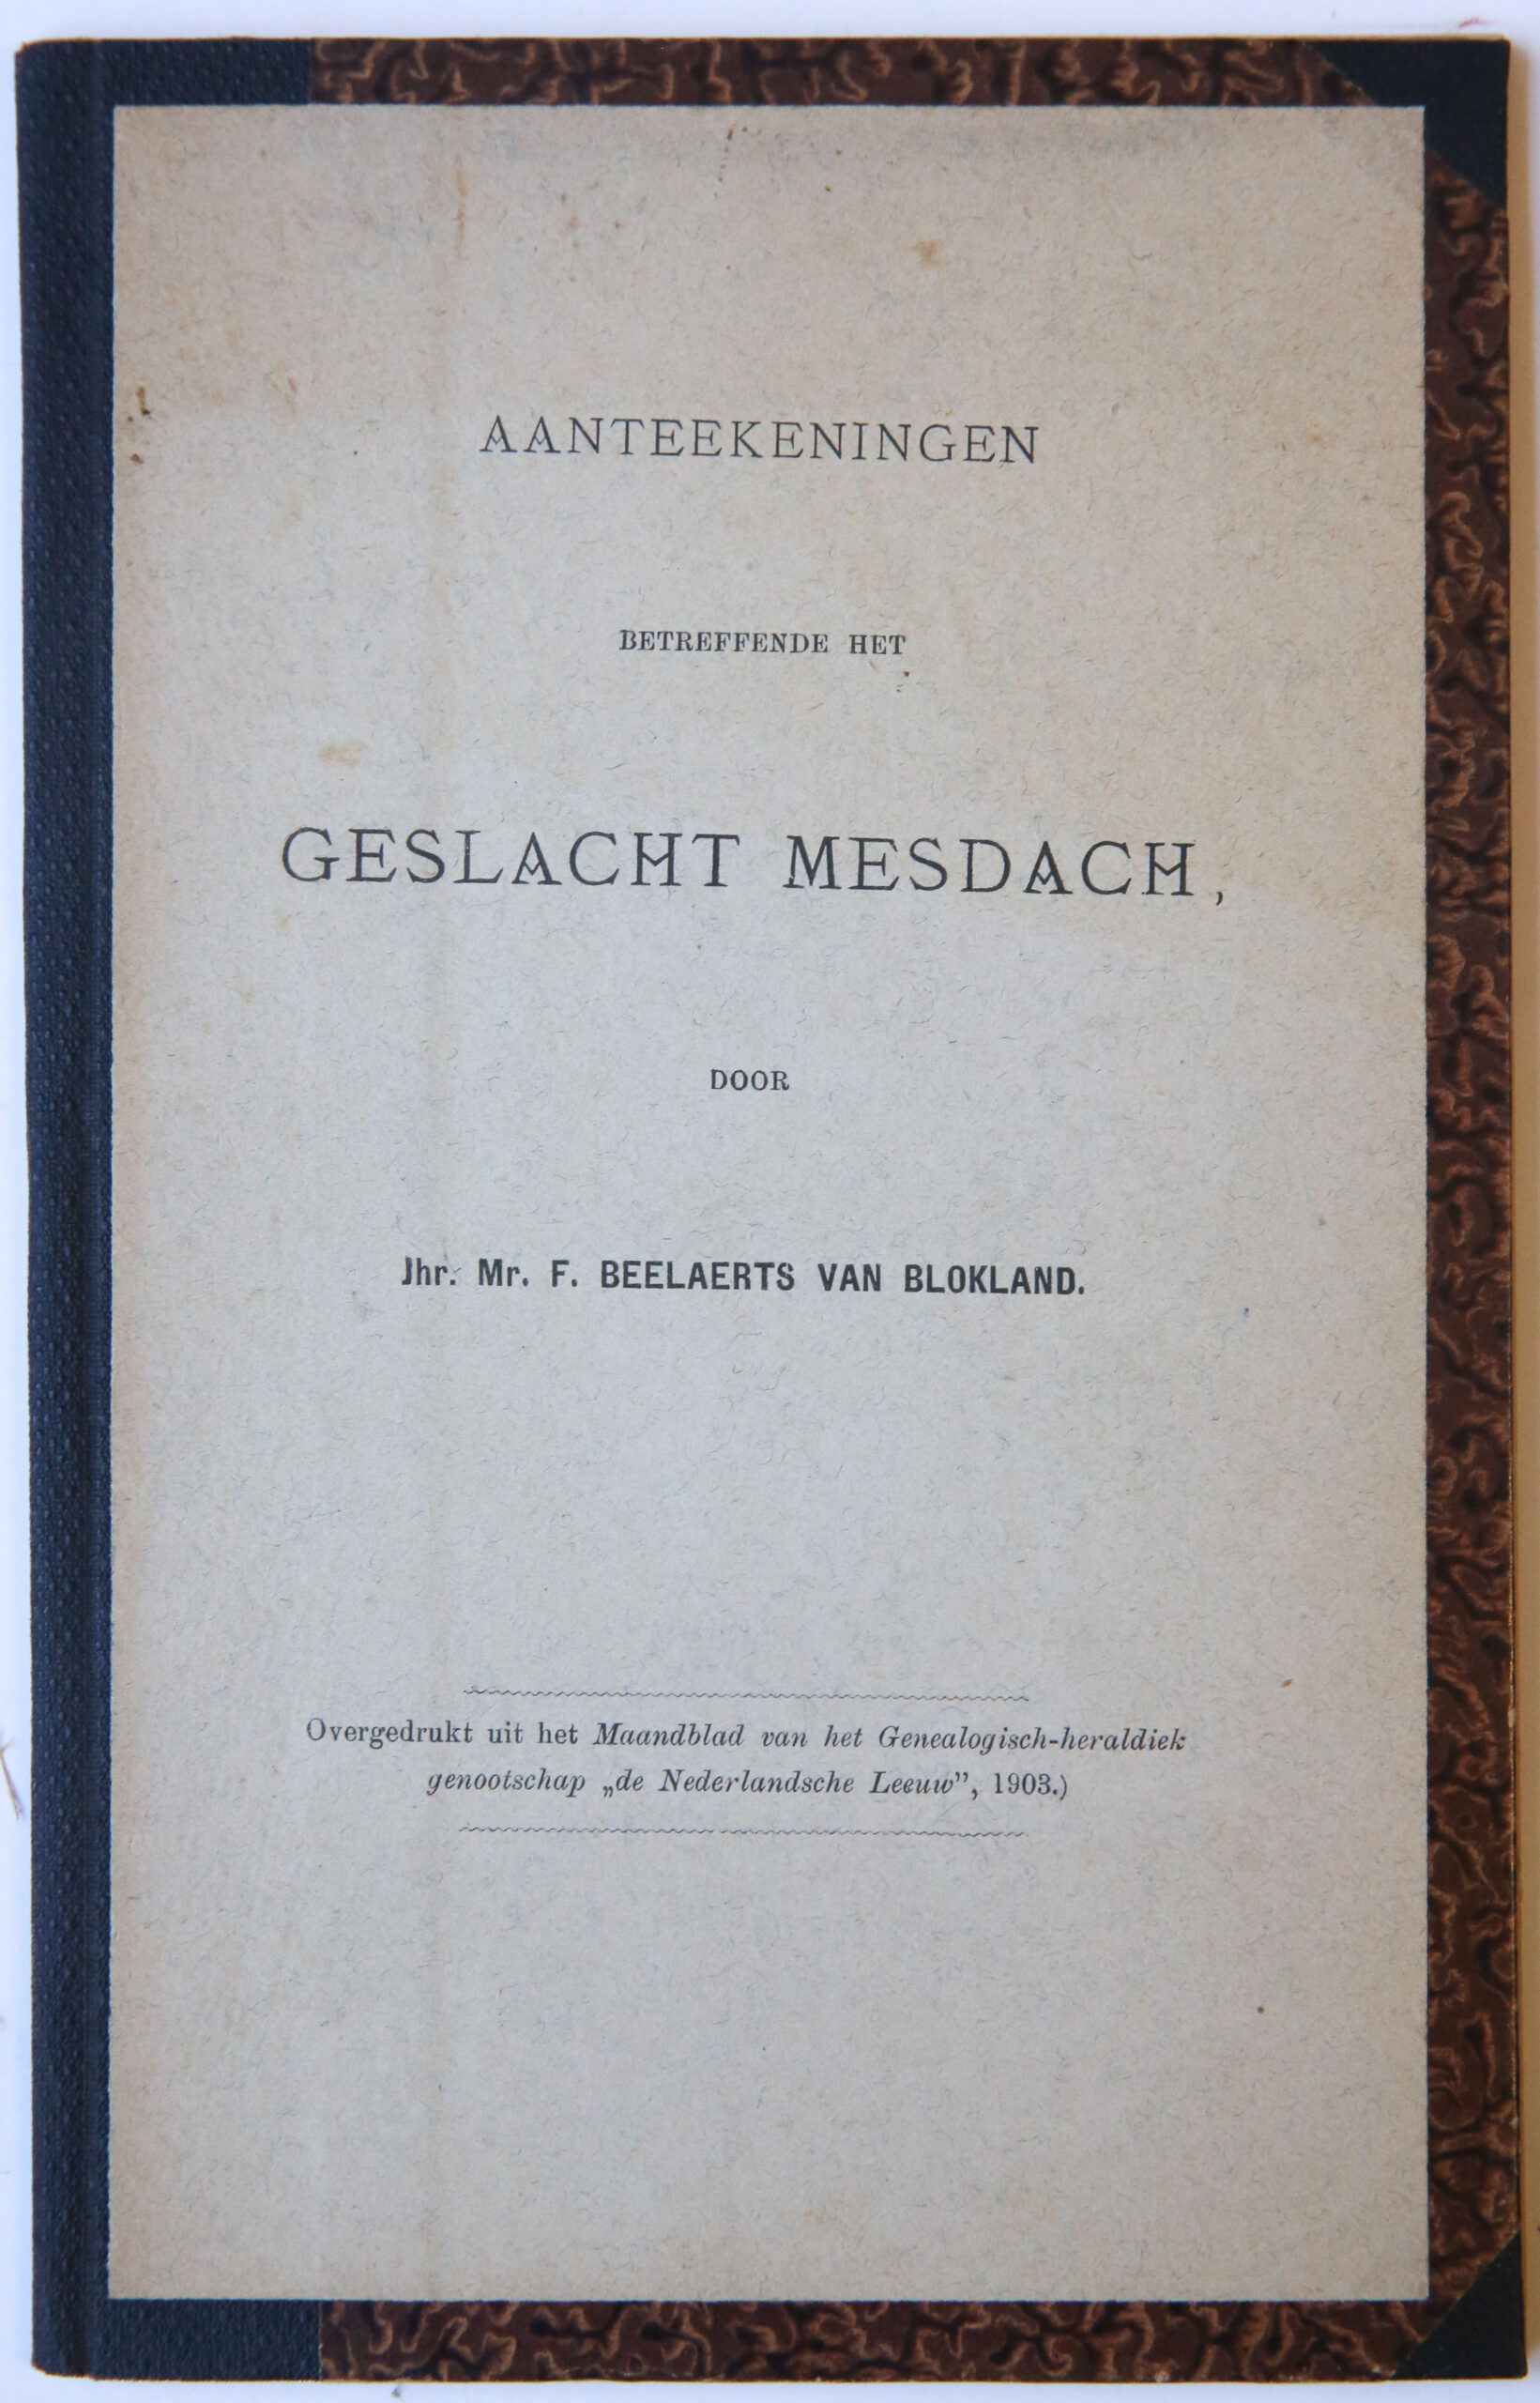 [Geneology 1903] Aantekeningen betreffende het geslacht Mesdach. Door F. Beelaerts van Blokland, overdruk Ned. Leeuw 1903, 12 pag.